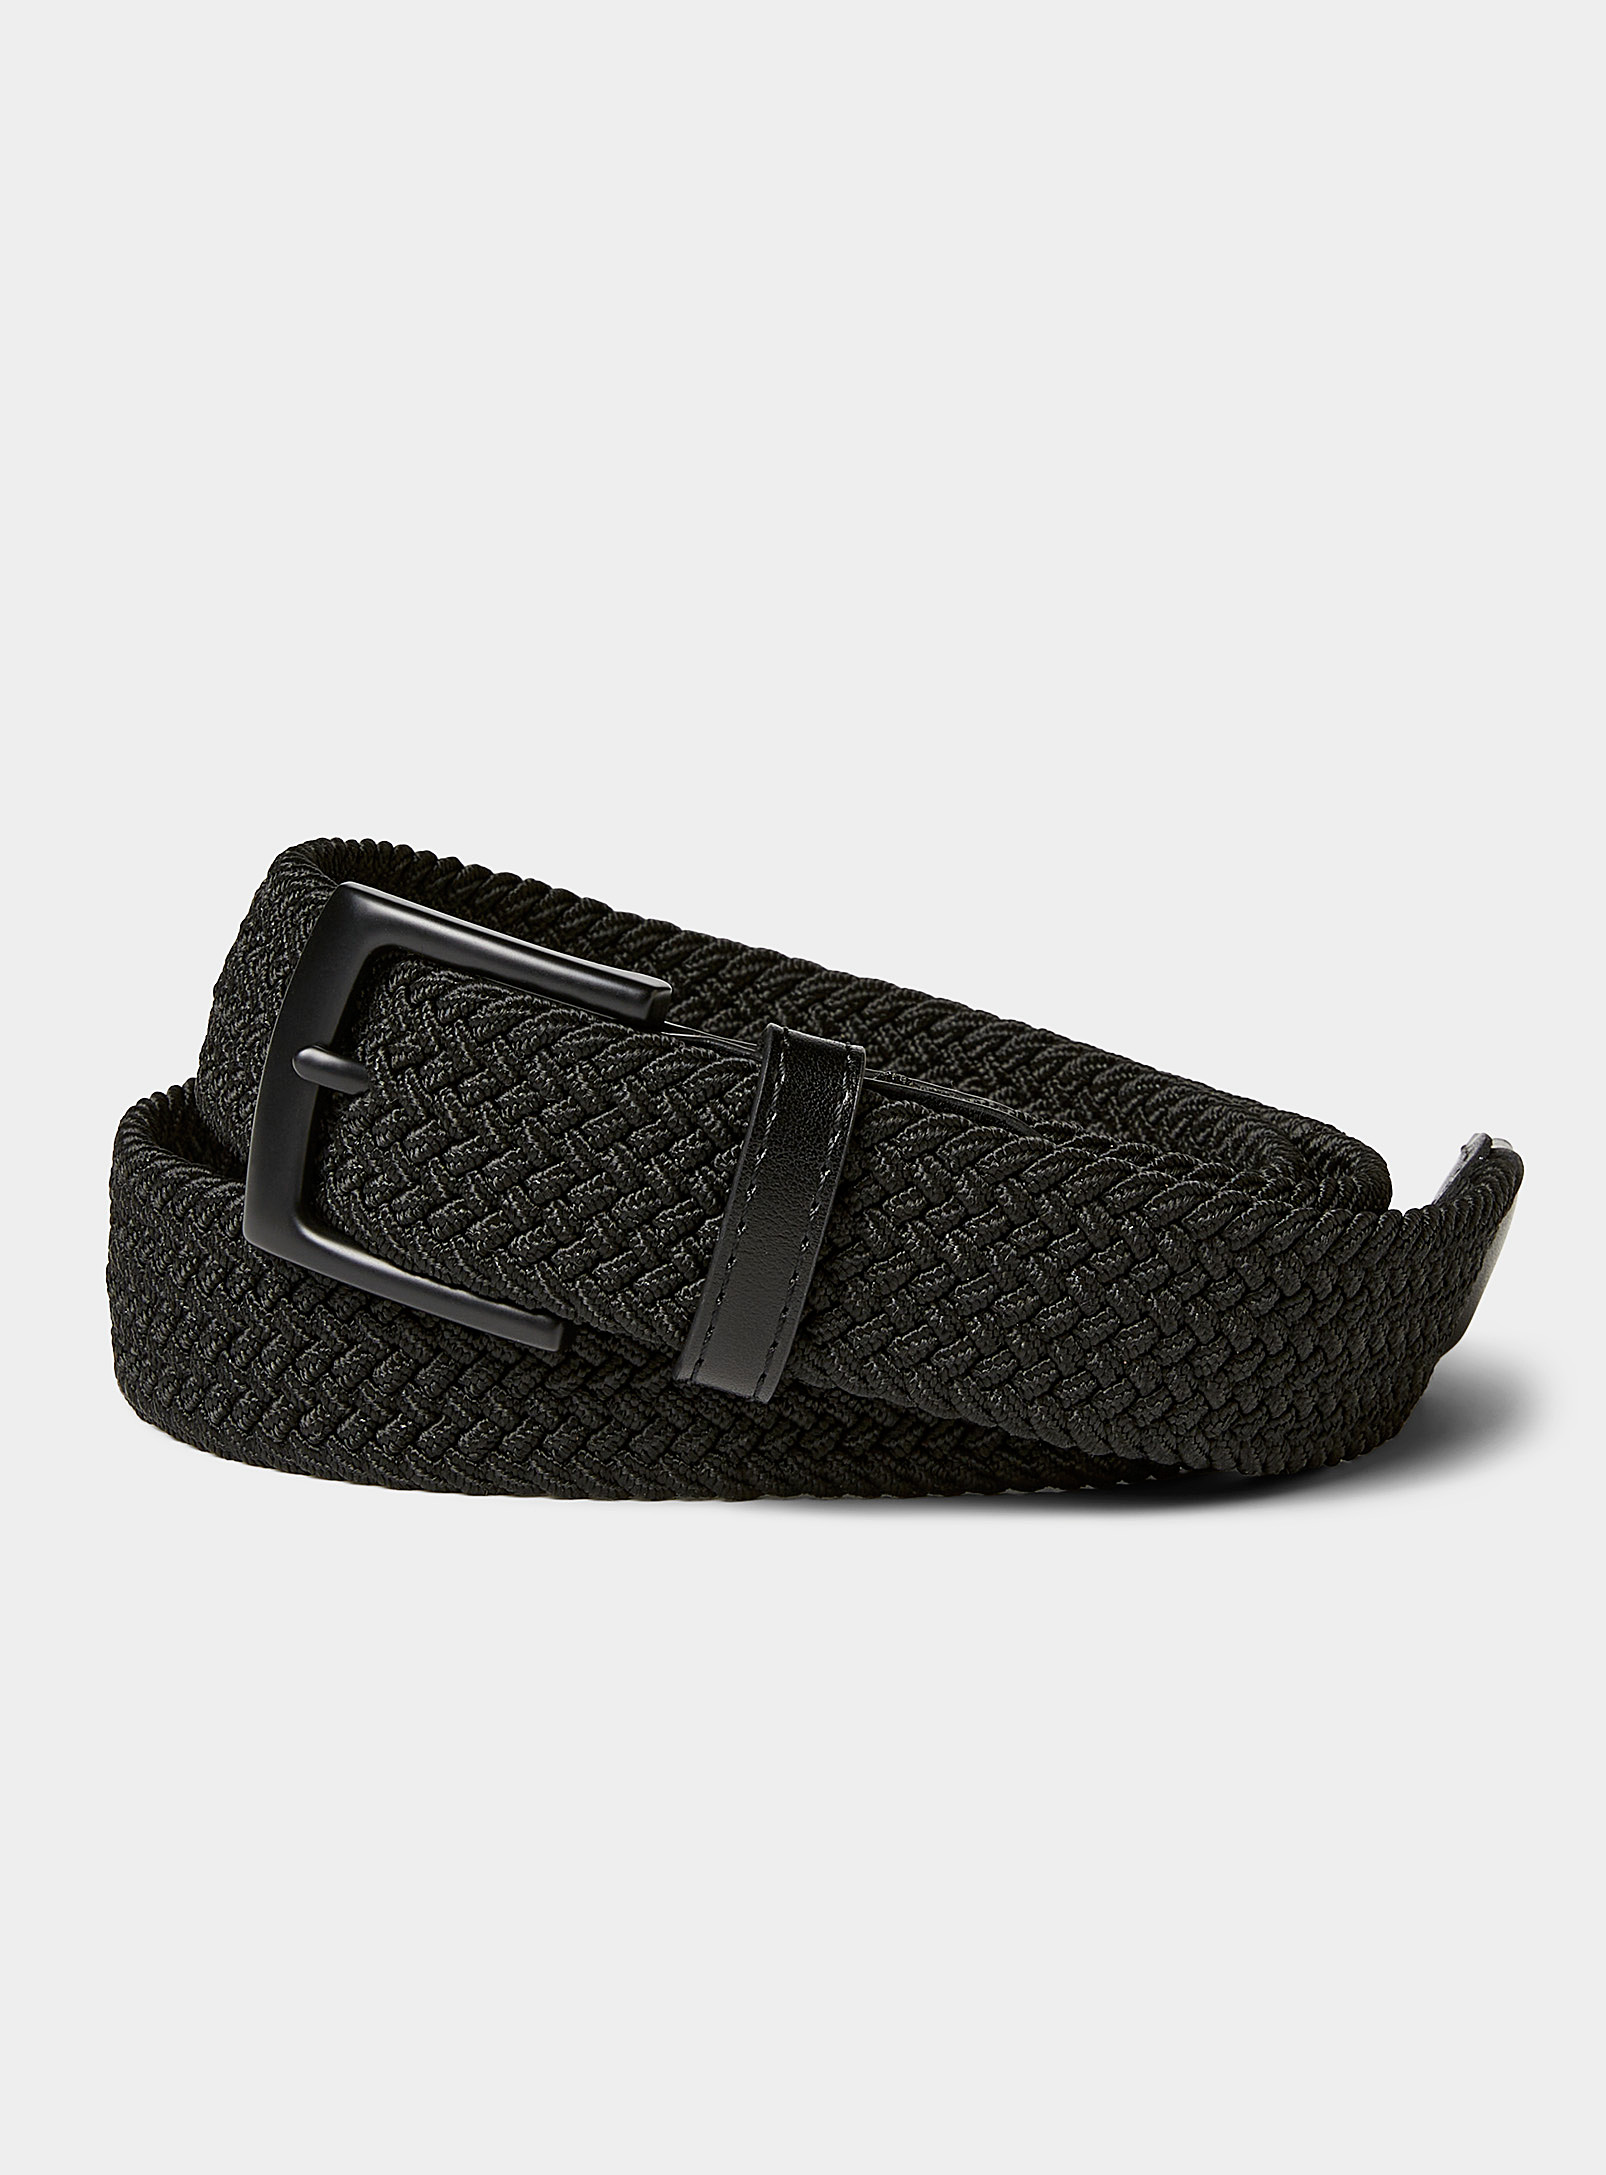 Le 31 - Men's All black braided belt